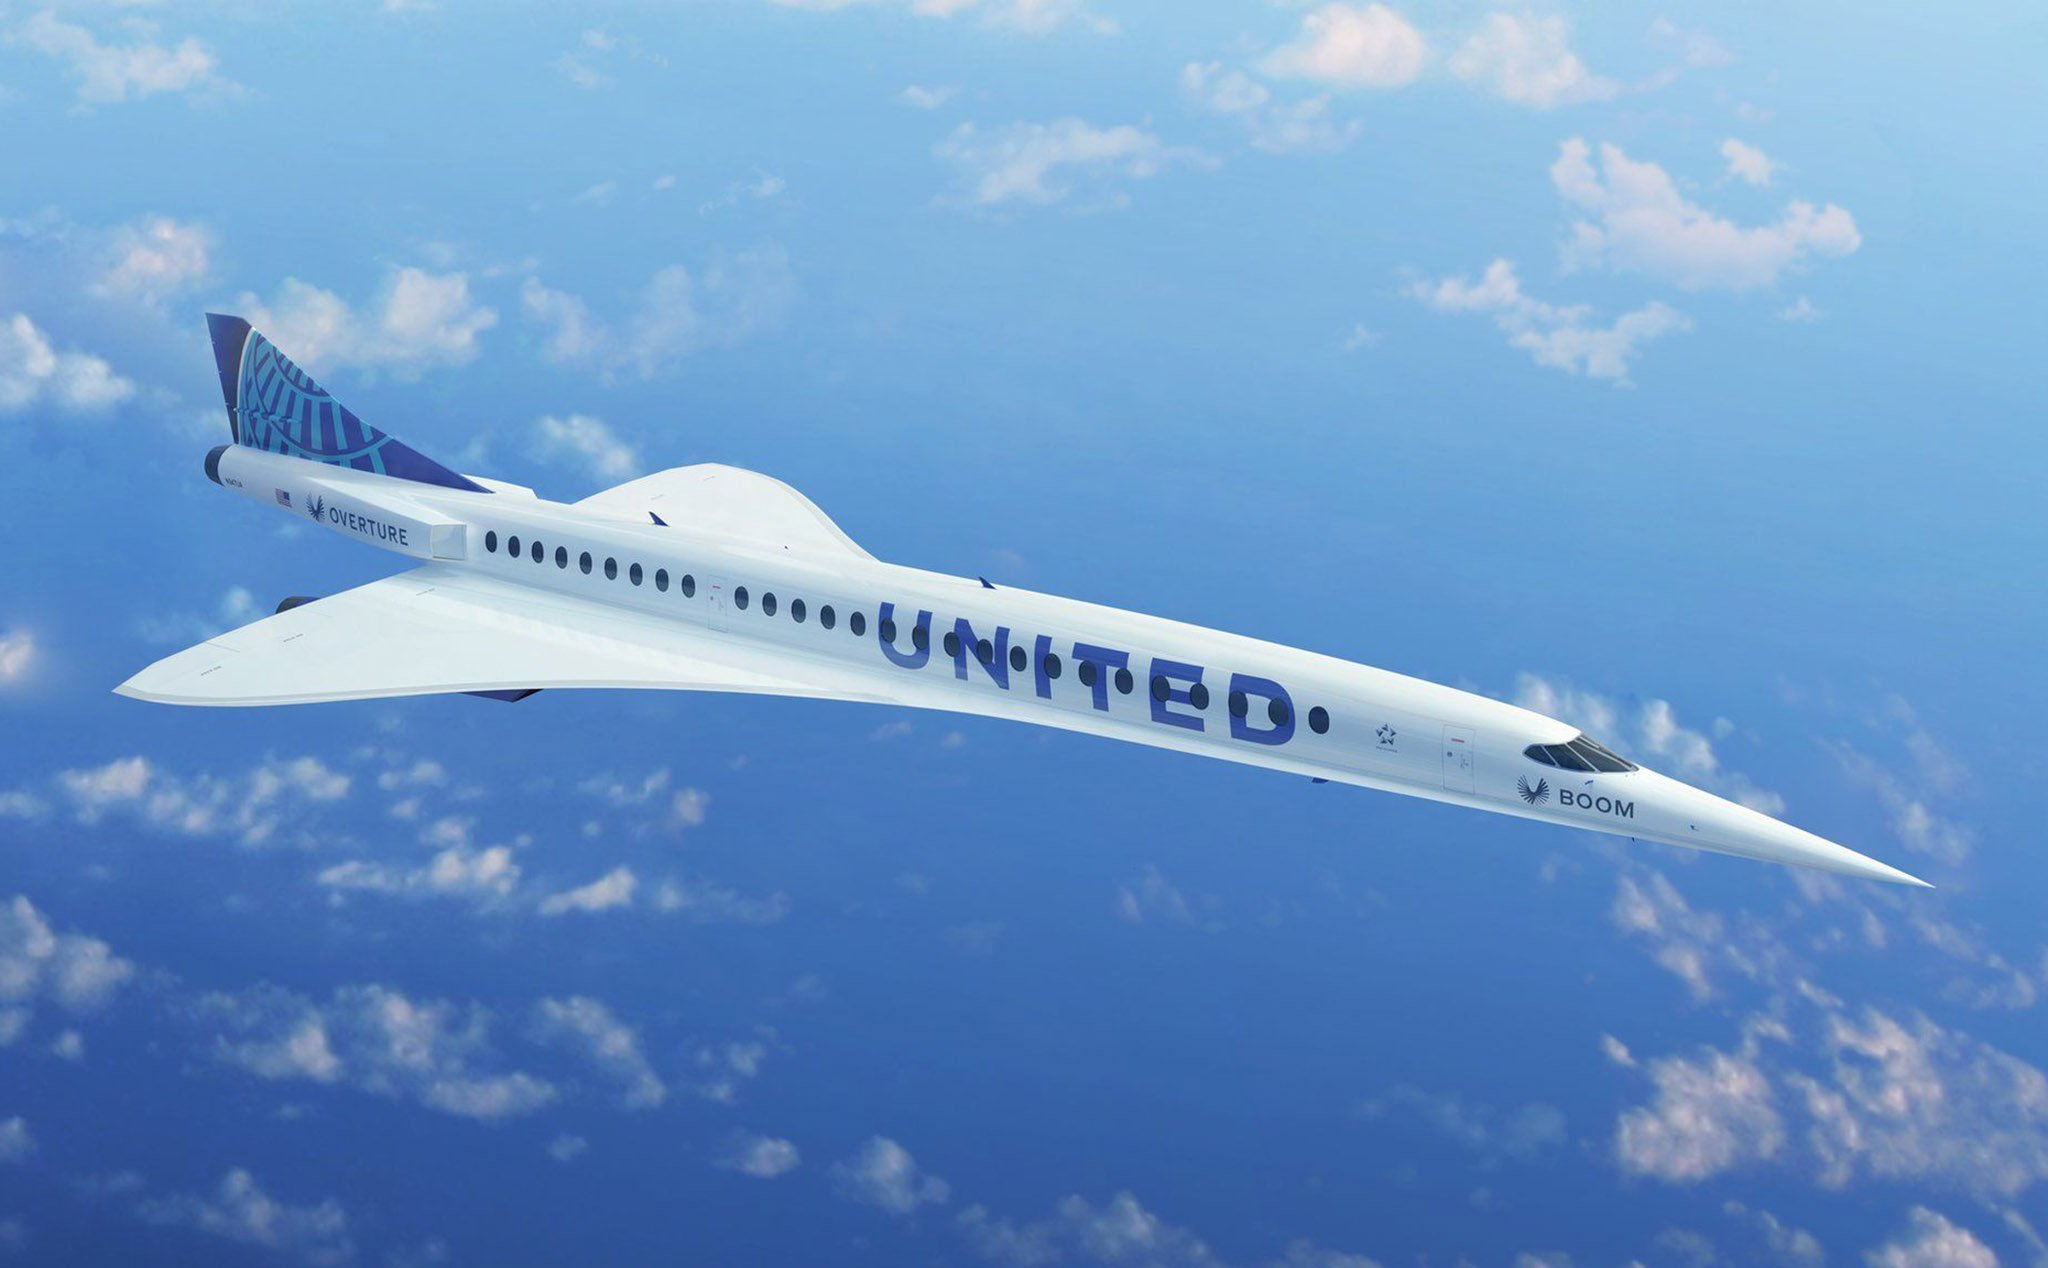 United đặt mua 15 chiếc máy bay siêu thanh của Boom Supersonic, chuẩn bị cho kỷ nguyên siêu thanh!